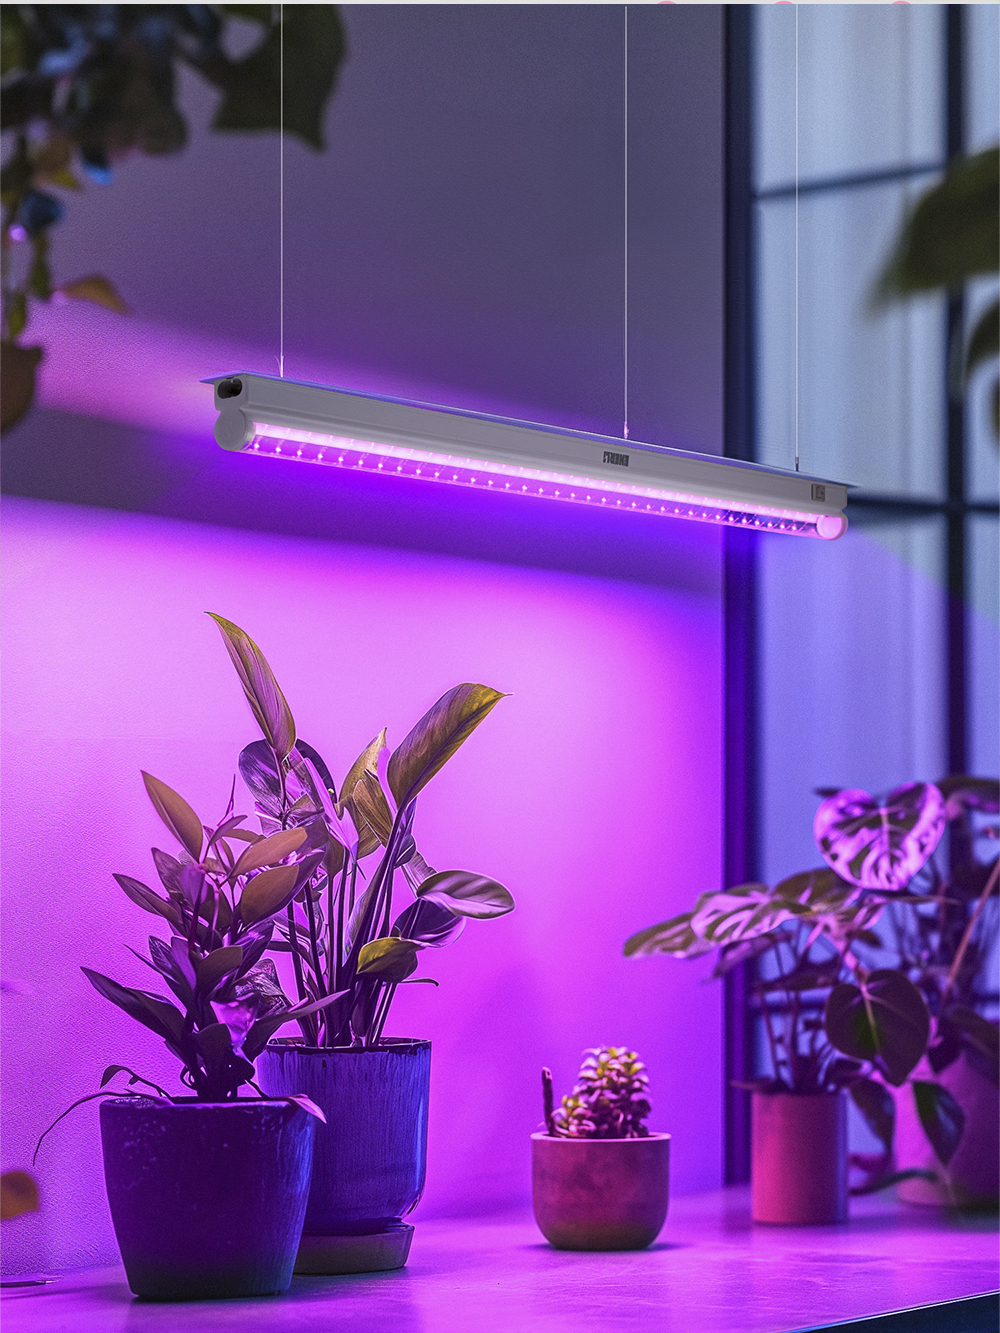 Светодиодный светильник для растений ENERLI 18 Вт 1178мм полный спектр 2 шт